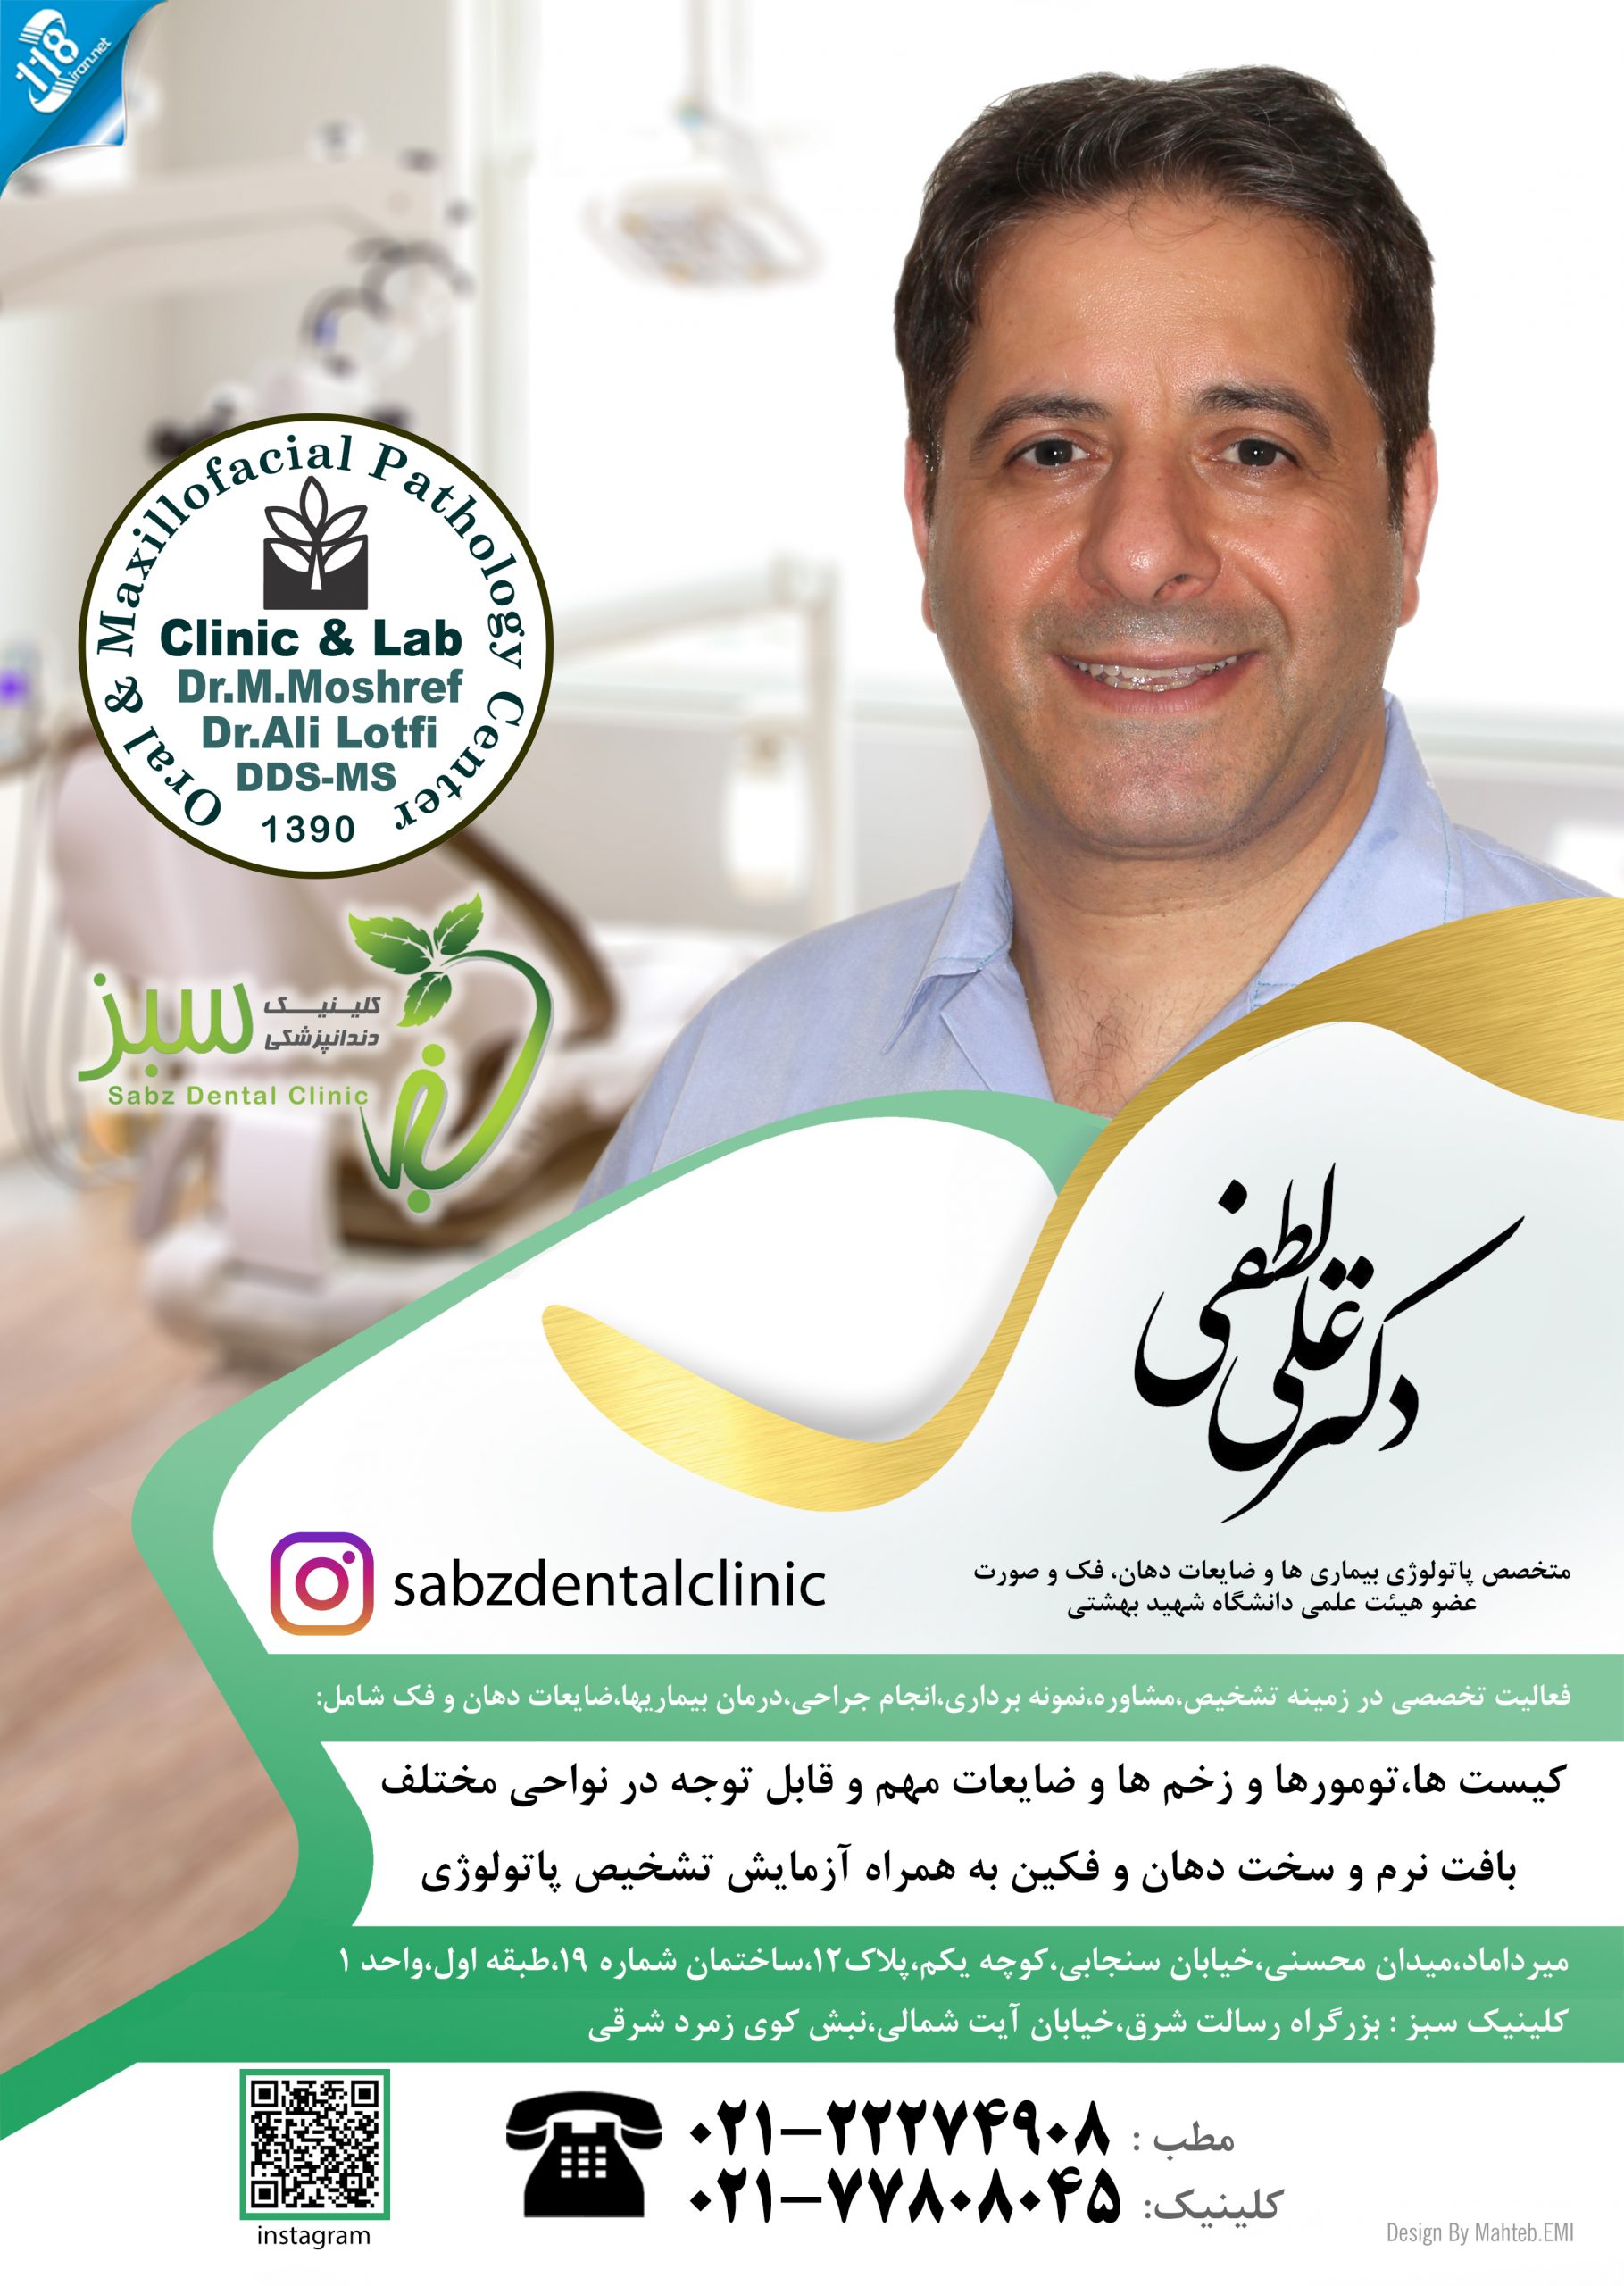  دکتر علی لطفی در تهران 